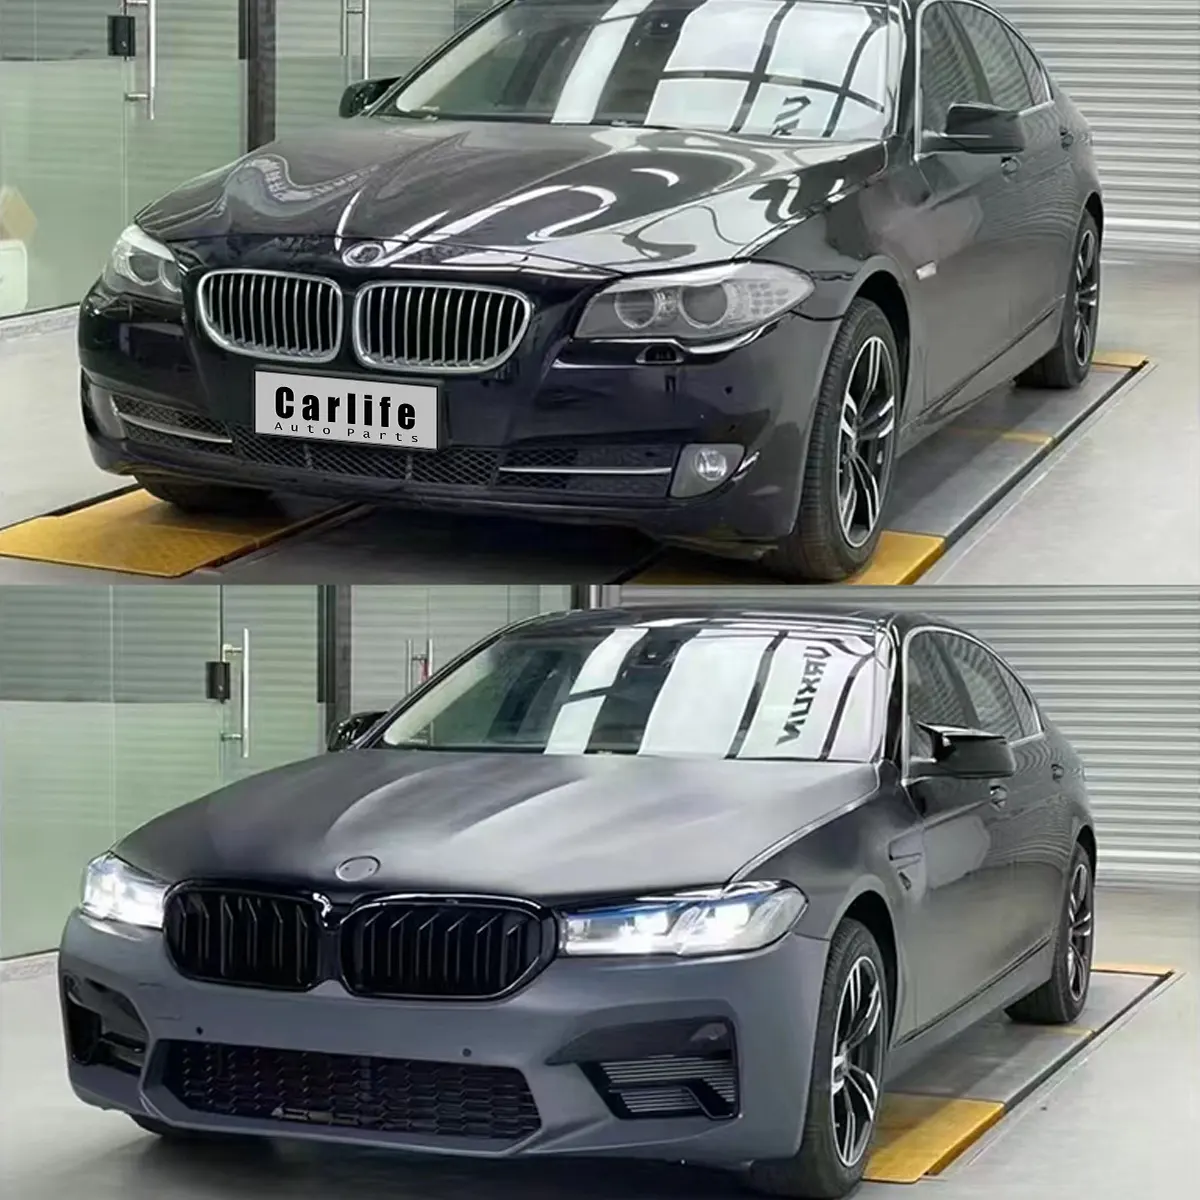 Accesorios de coche para BMW serie 5 F10, mejora de G30 M5, piezas con campana, guardabarros, faros delanteros y traseros